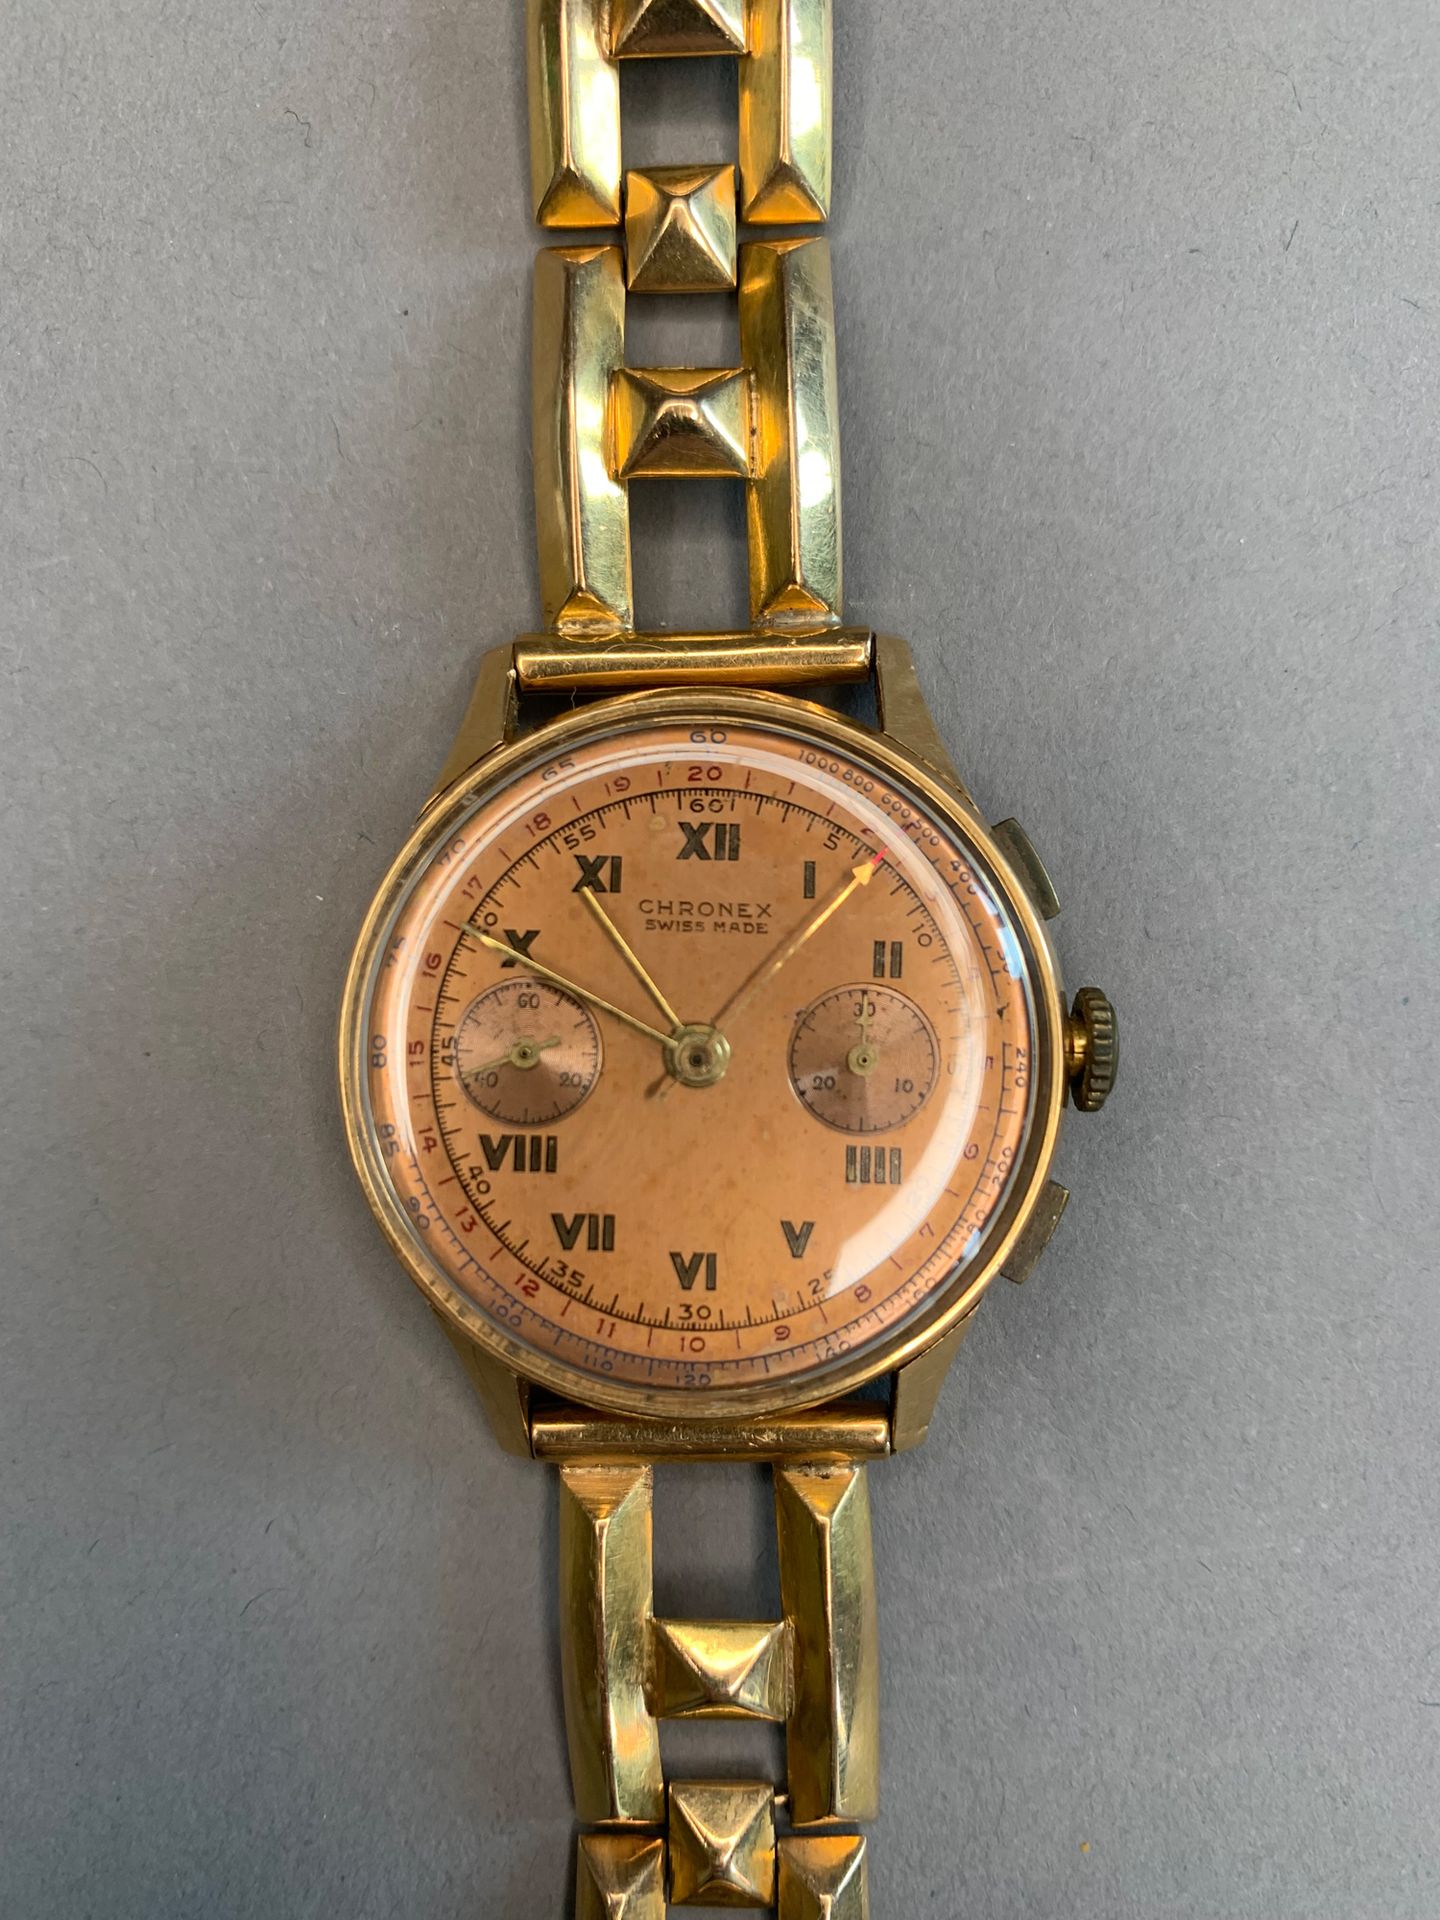 CHRONEX Cinturino in oro 18 K.
Cronografo, minuti, secondi, cassa rotonda, quadr&hellip;